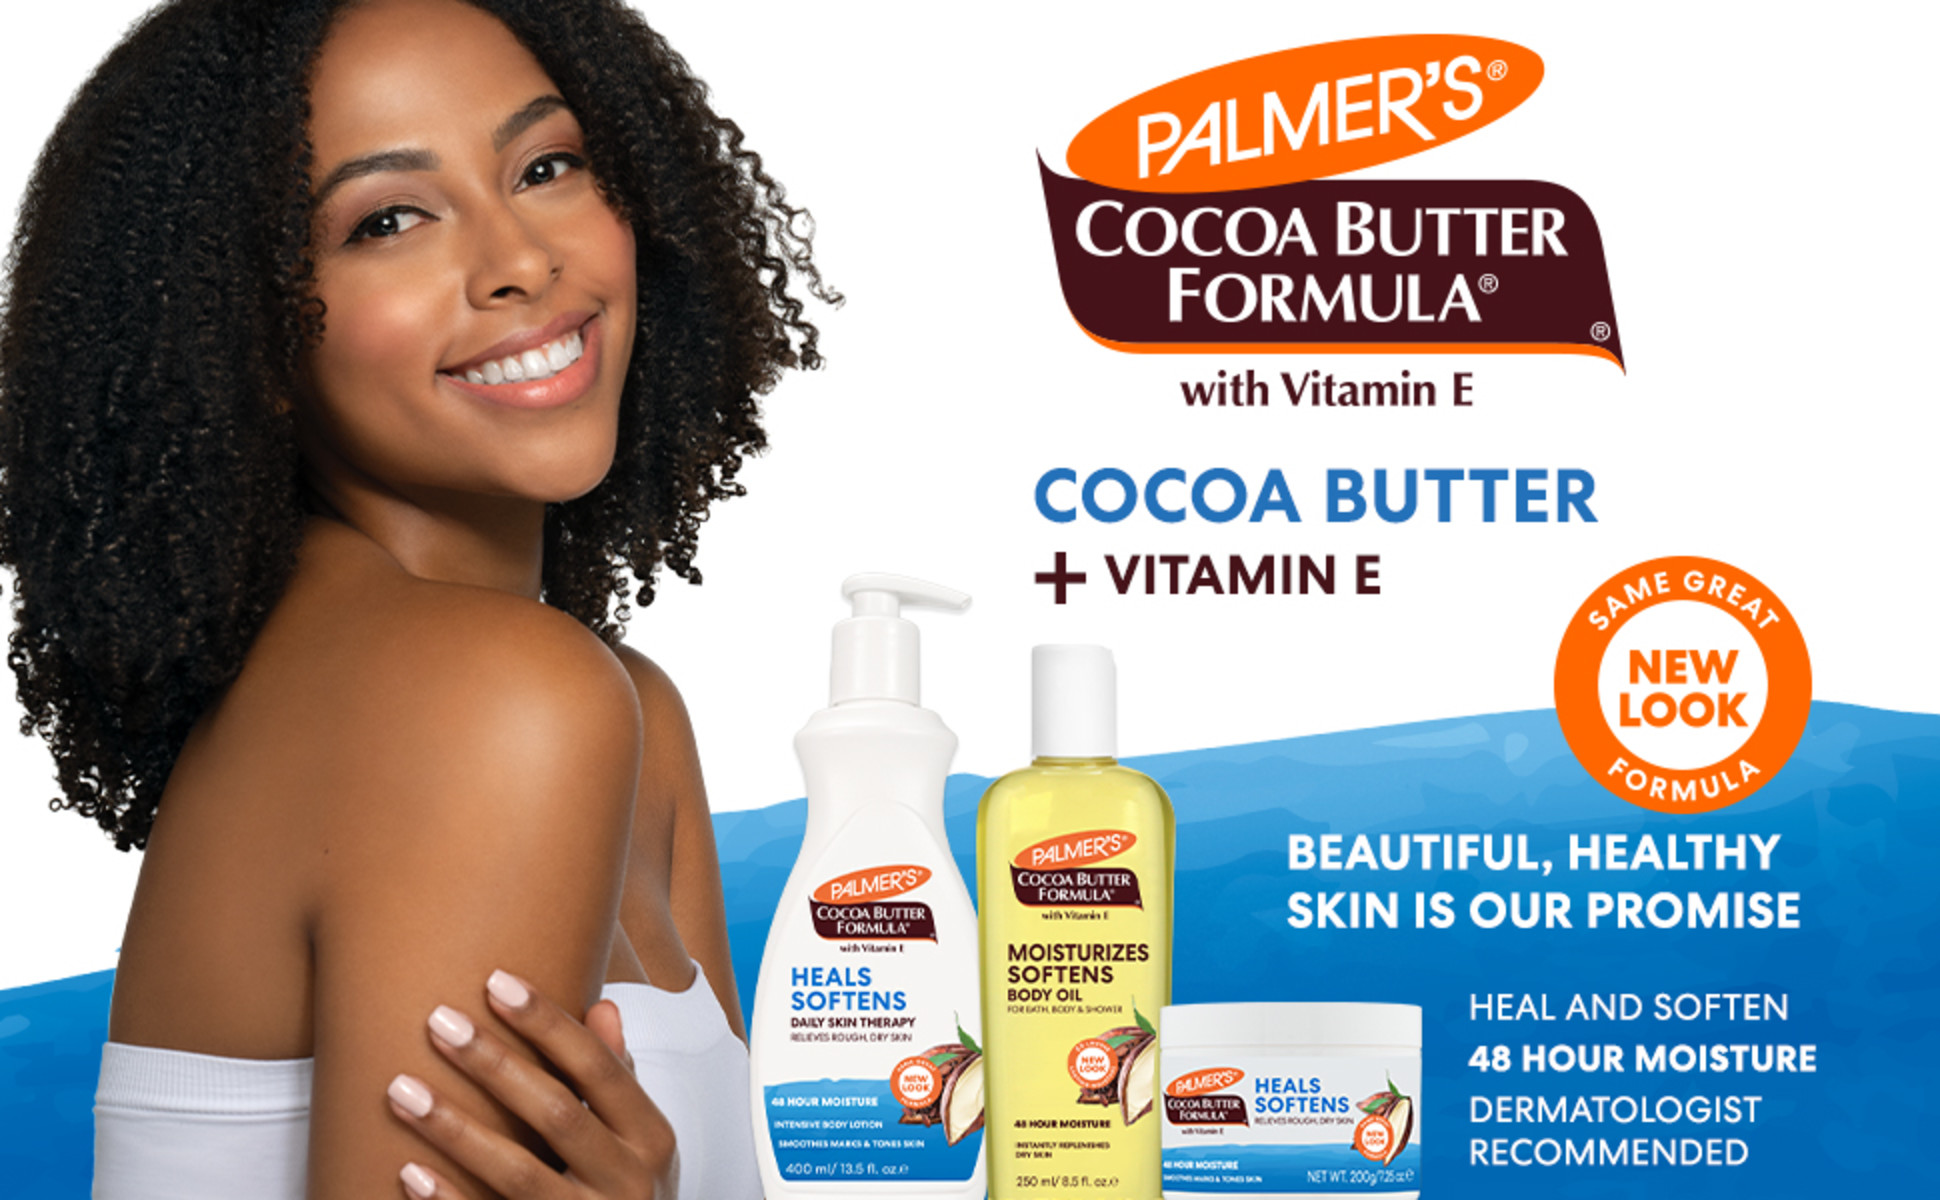 Palmer's Cocoa Butter Formula Solid Balm, 7.25 oz. 